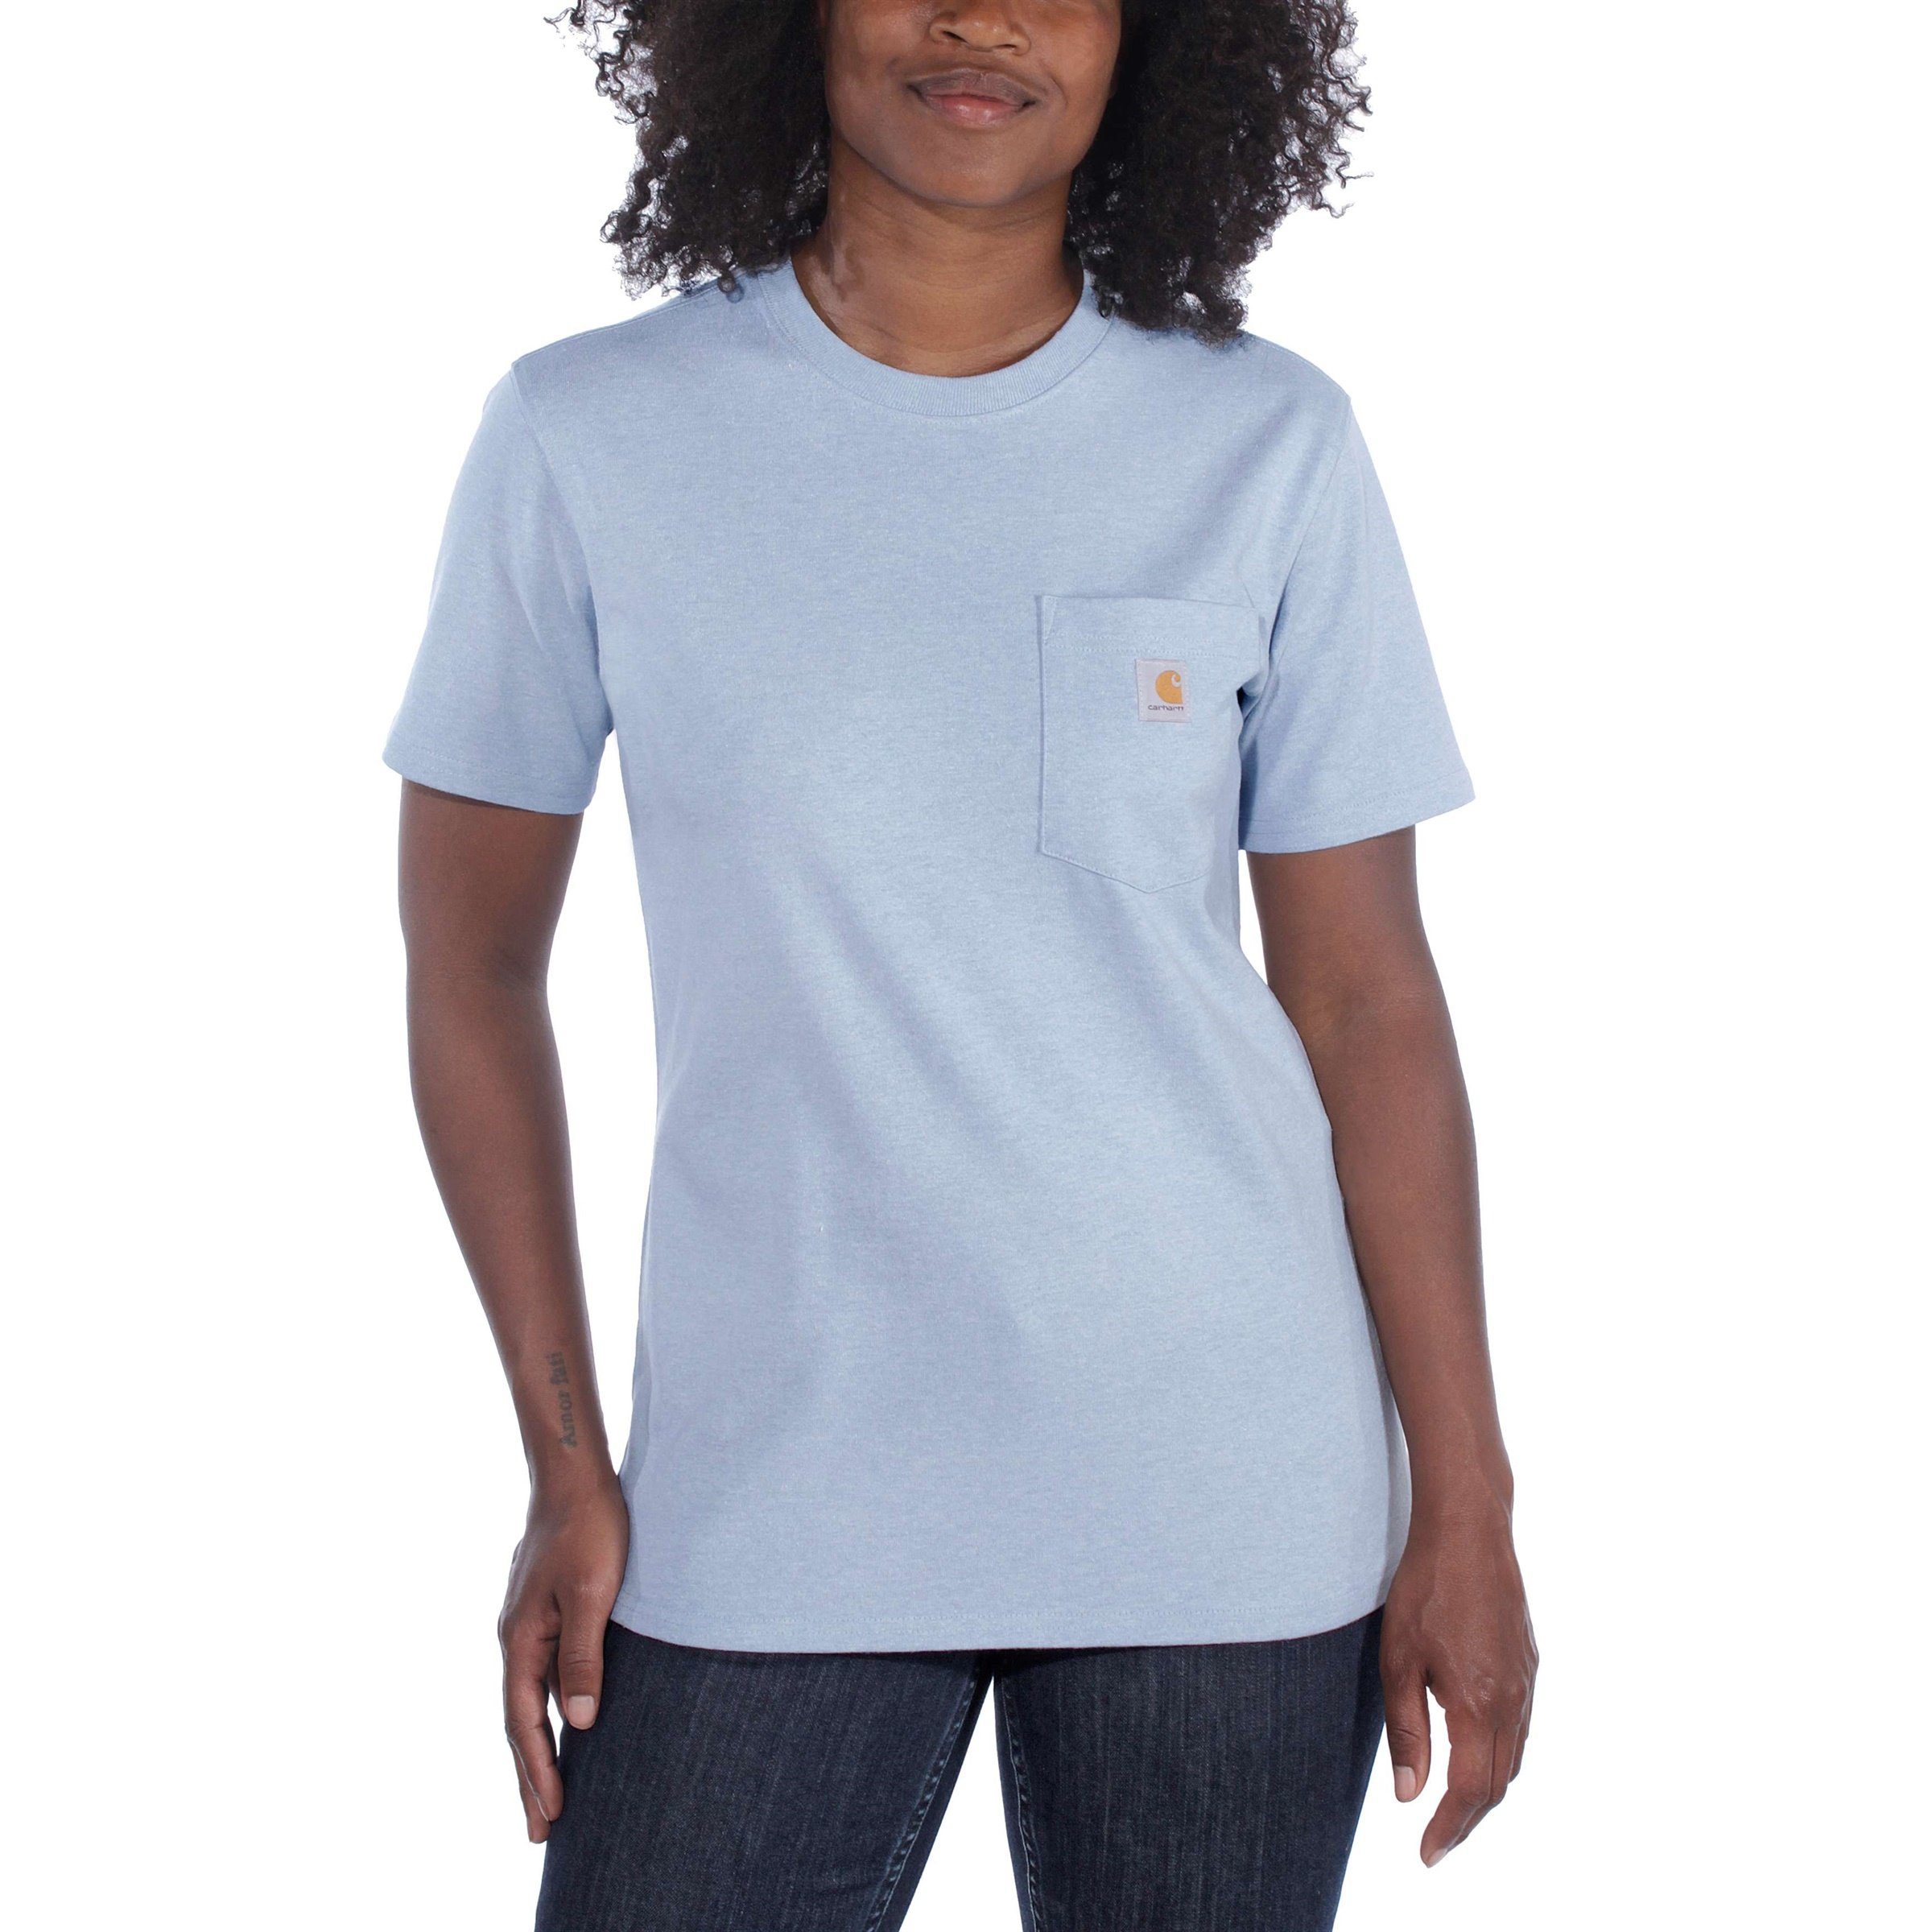 Carhartt T-Shirt Carhartt Damen Fit currant Short-Sleeve Adult T-Shirt Pocket Loose heather Heavyweight